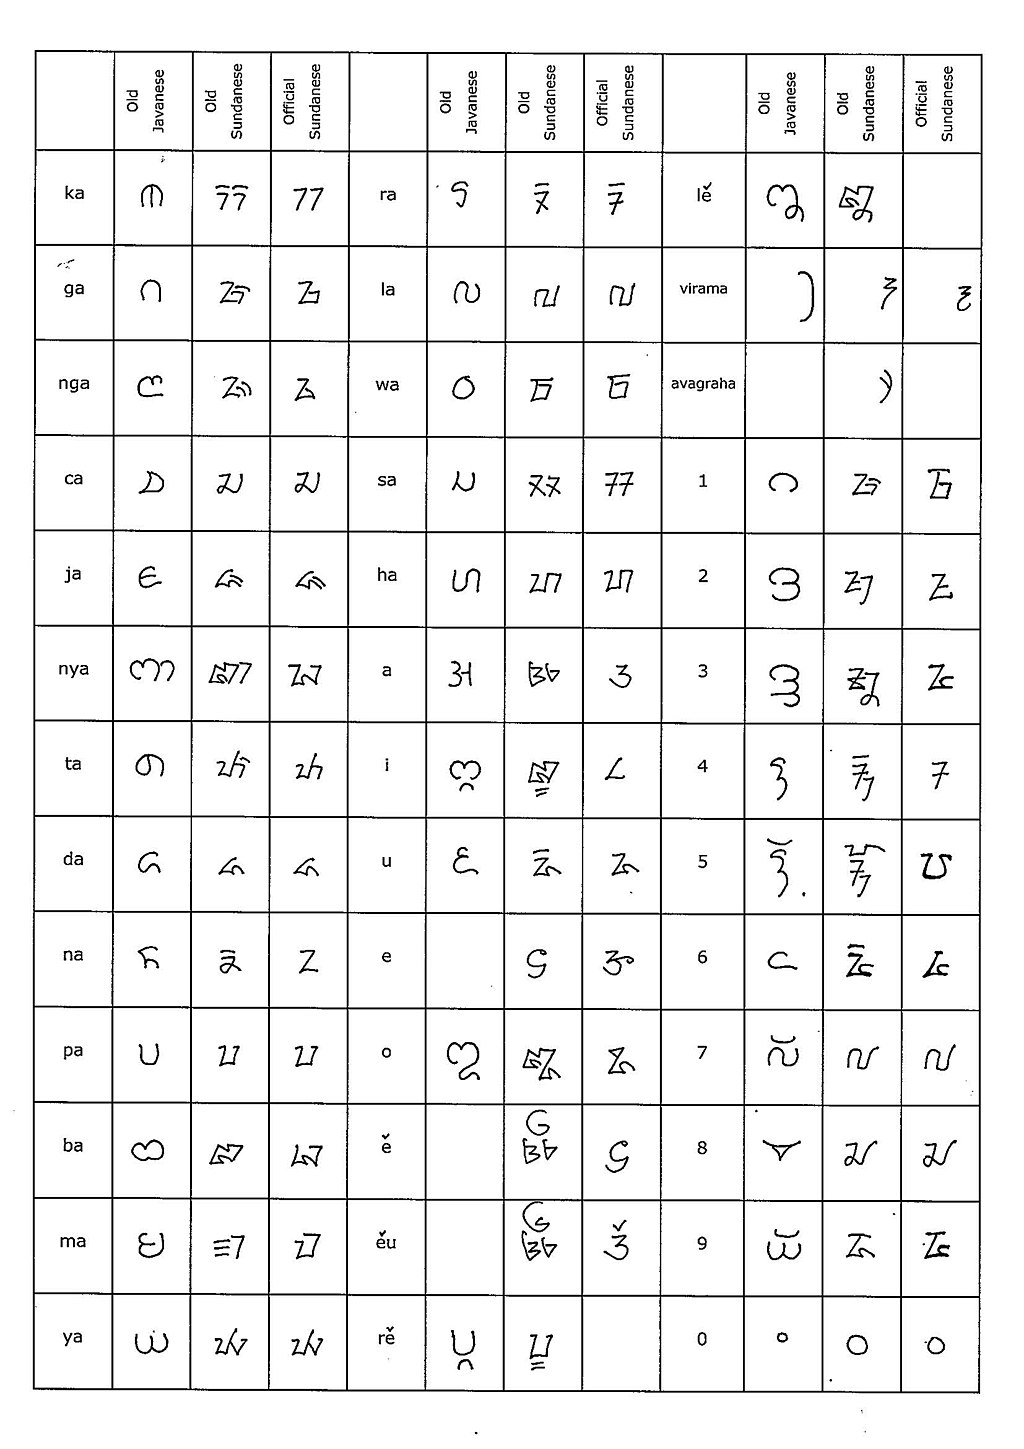 Perbandingan bentuk huruf antara Aksara Jawa Kuno, Aksara Sunda Kuno, dan Aksara Sunda Baku.